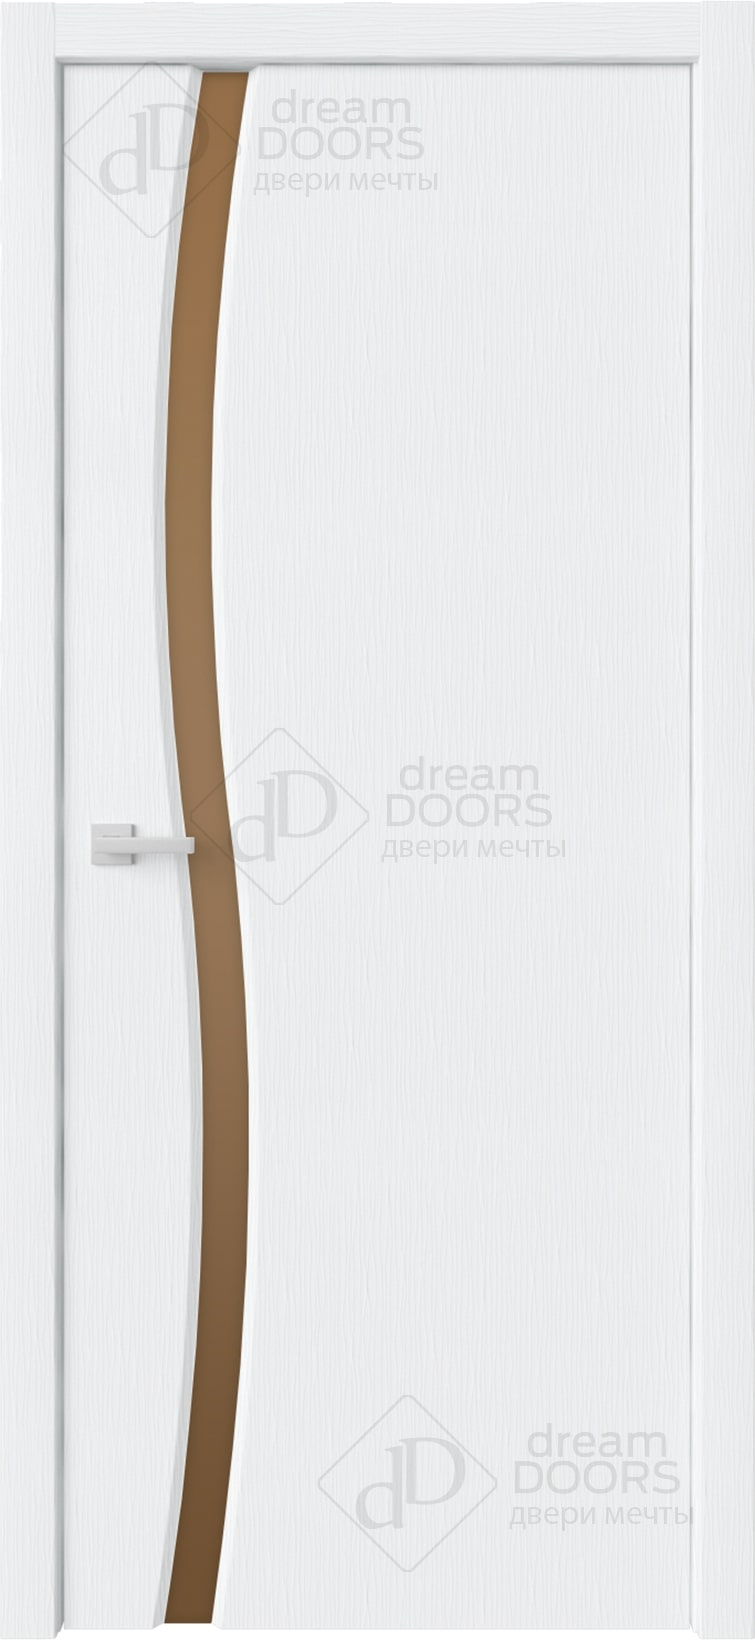 Dream Doors Межкомнатная дверь Сириус 1 узкое ДО, арт. 20080 - фото №1